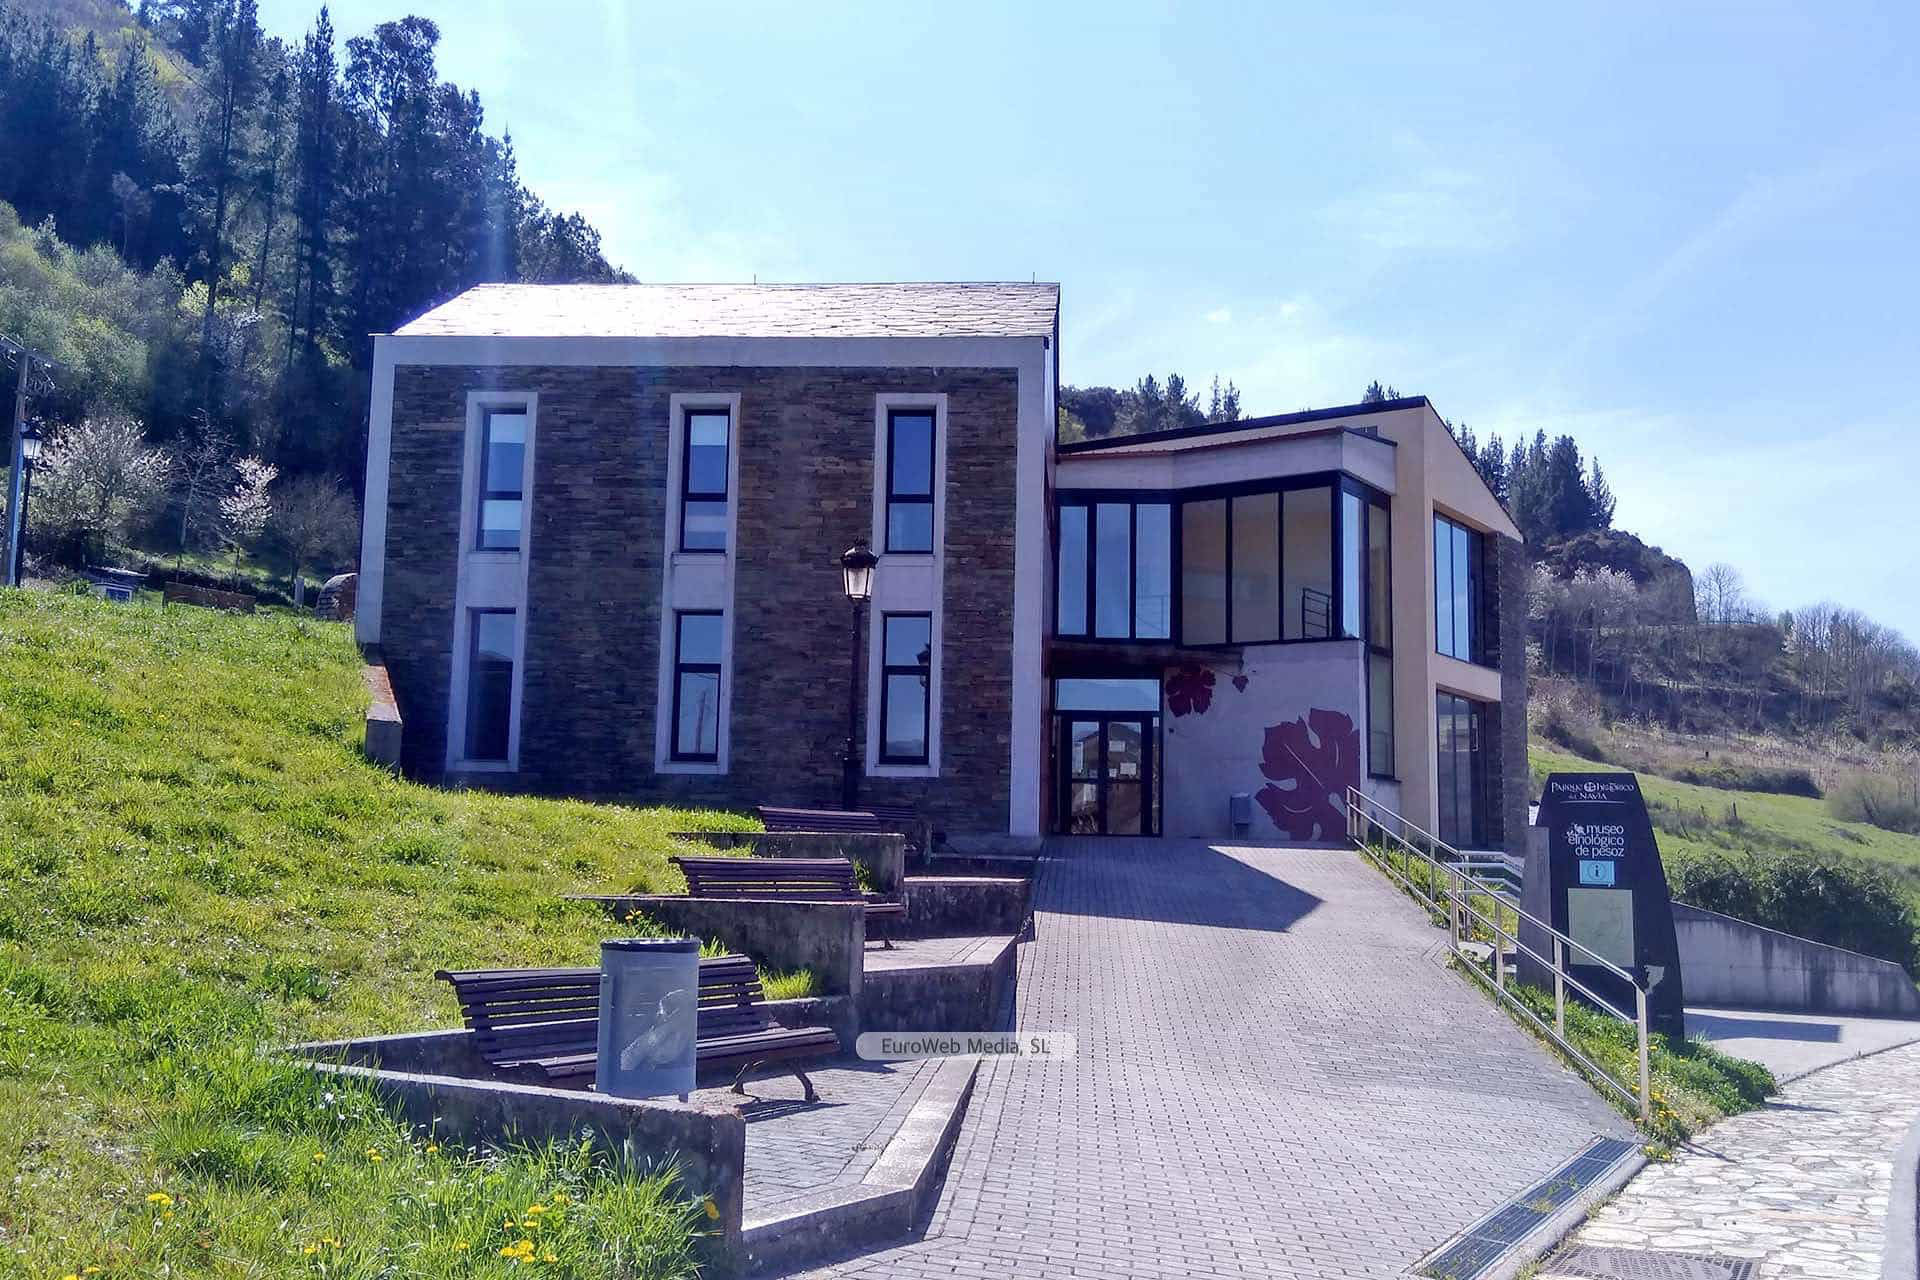 Museo Etnológico de Pesoz